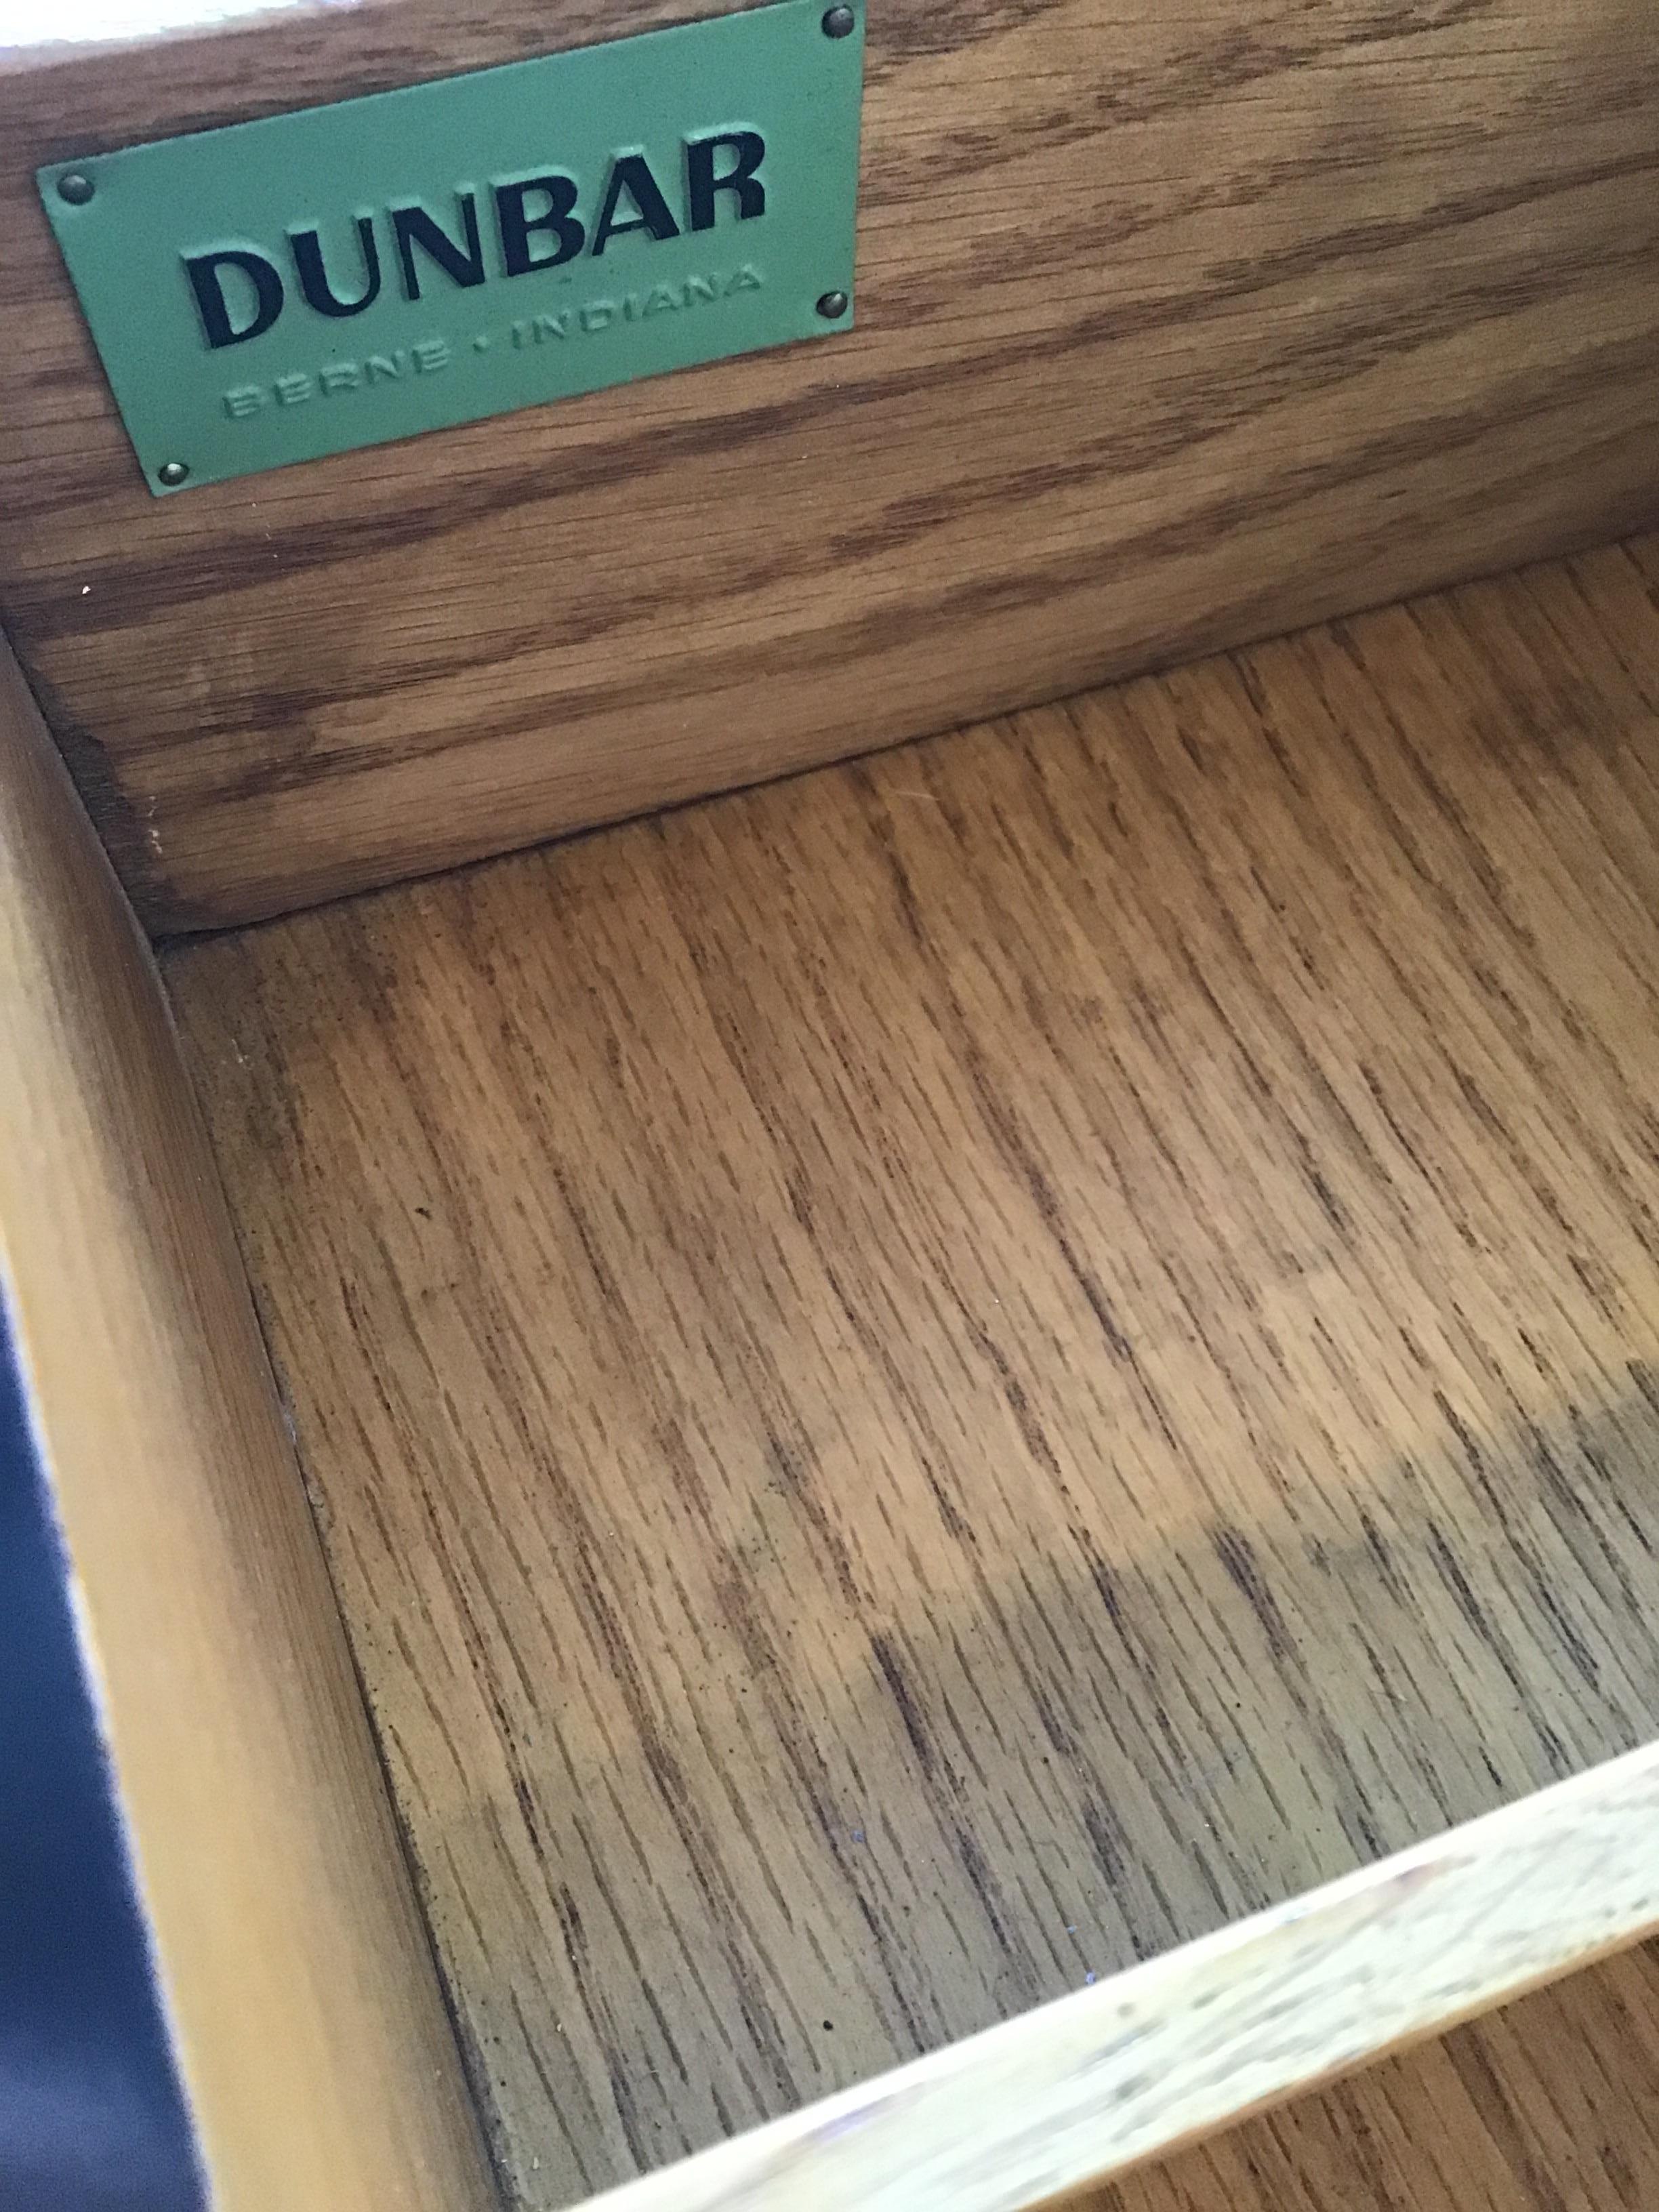 Dunbar Dresser Model 4478 6